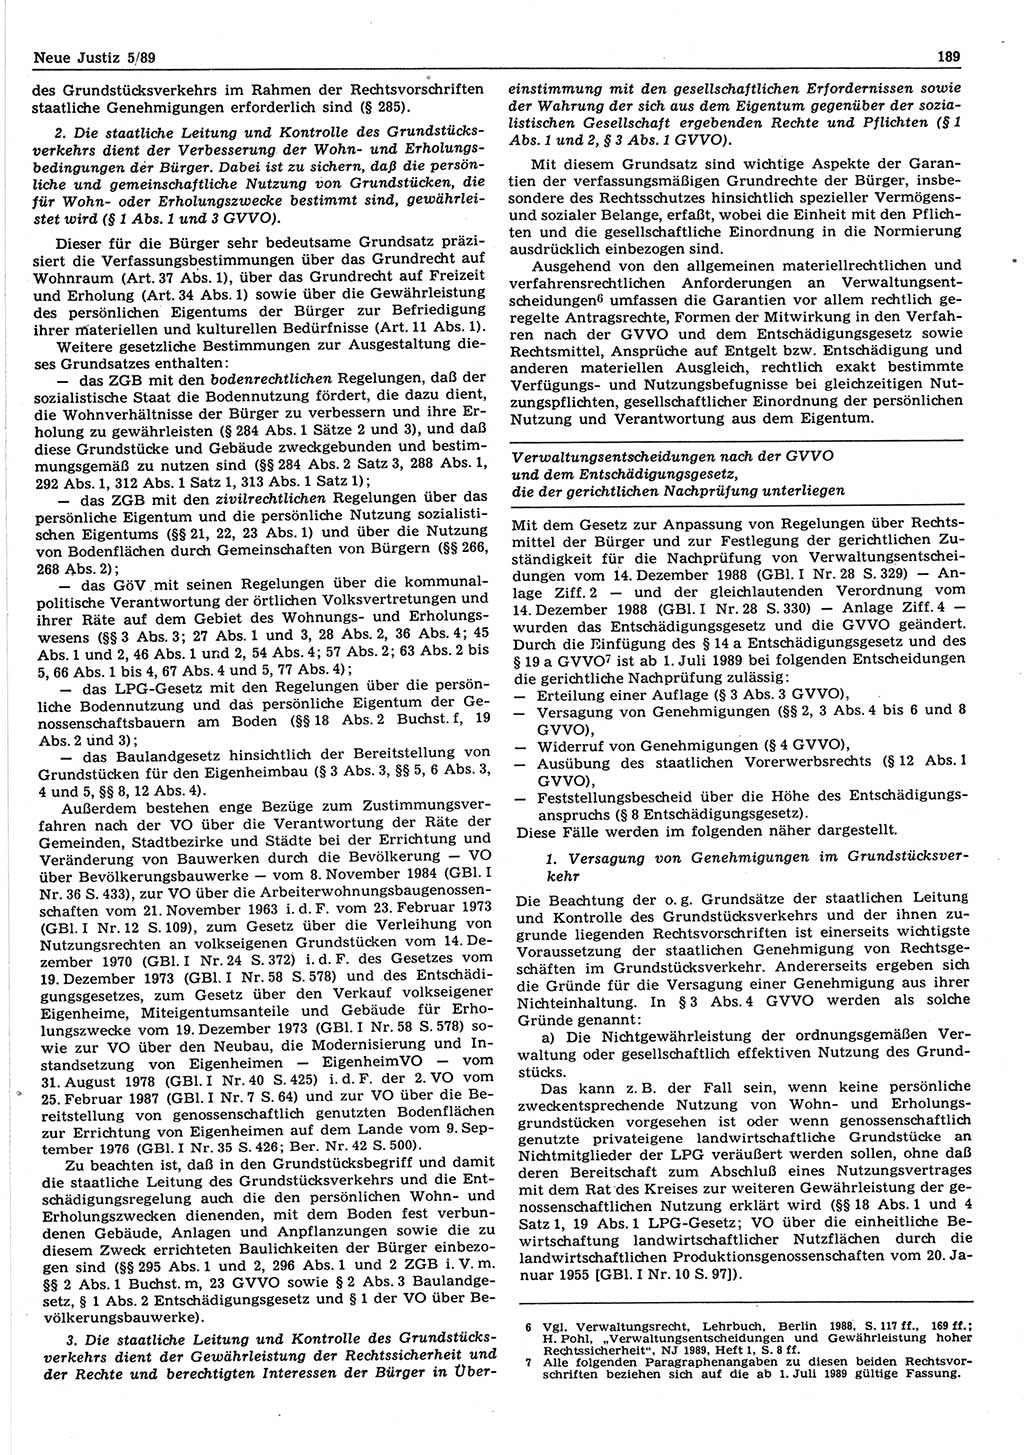 Neue Justiz (NJ), Zeitschrift für sozialistisches Recht und Gesetzlichkeit [Deutsche Demokratische Republik (DDR)], 43. Jahrgang 1989, Seite 189 (NJ DDR 1989, S. 189)